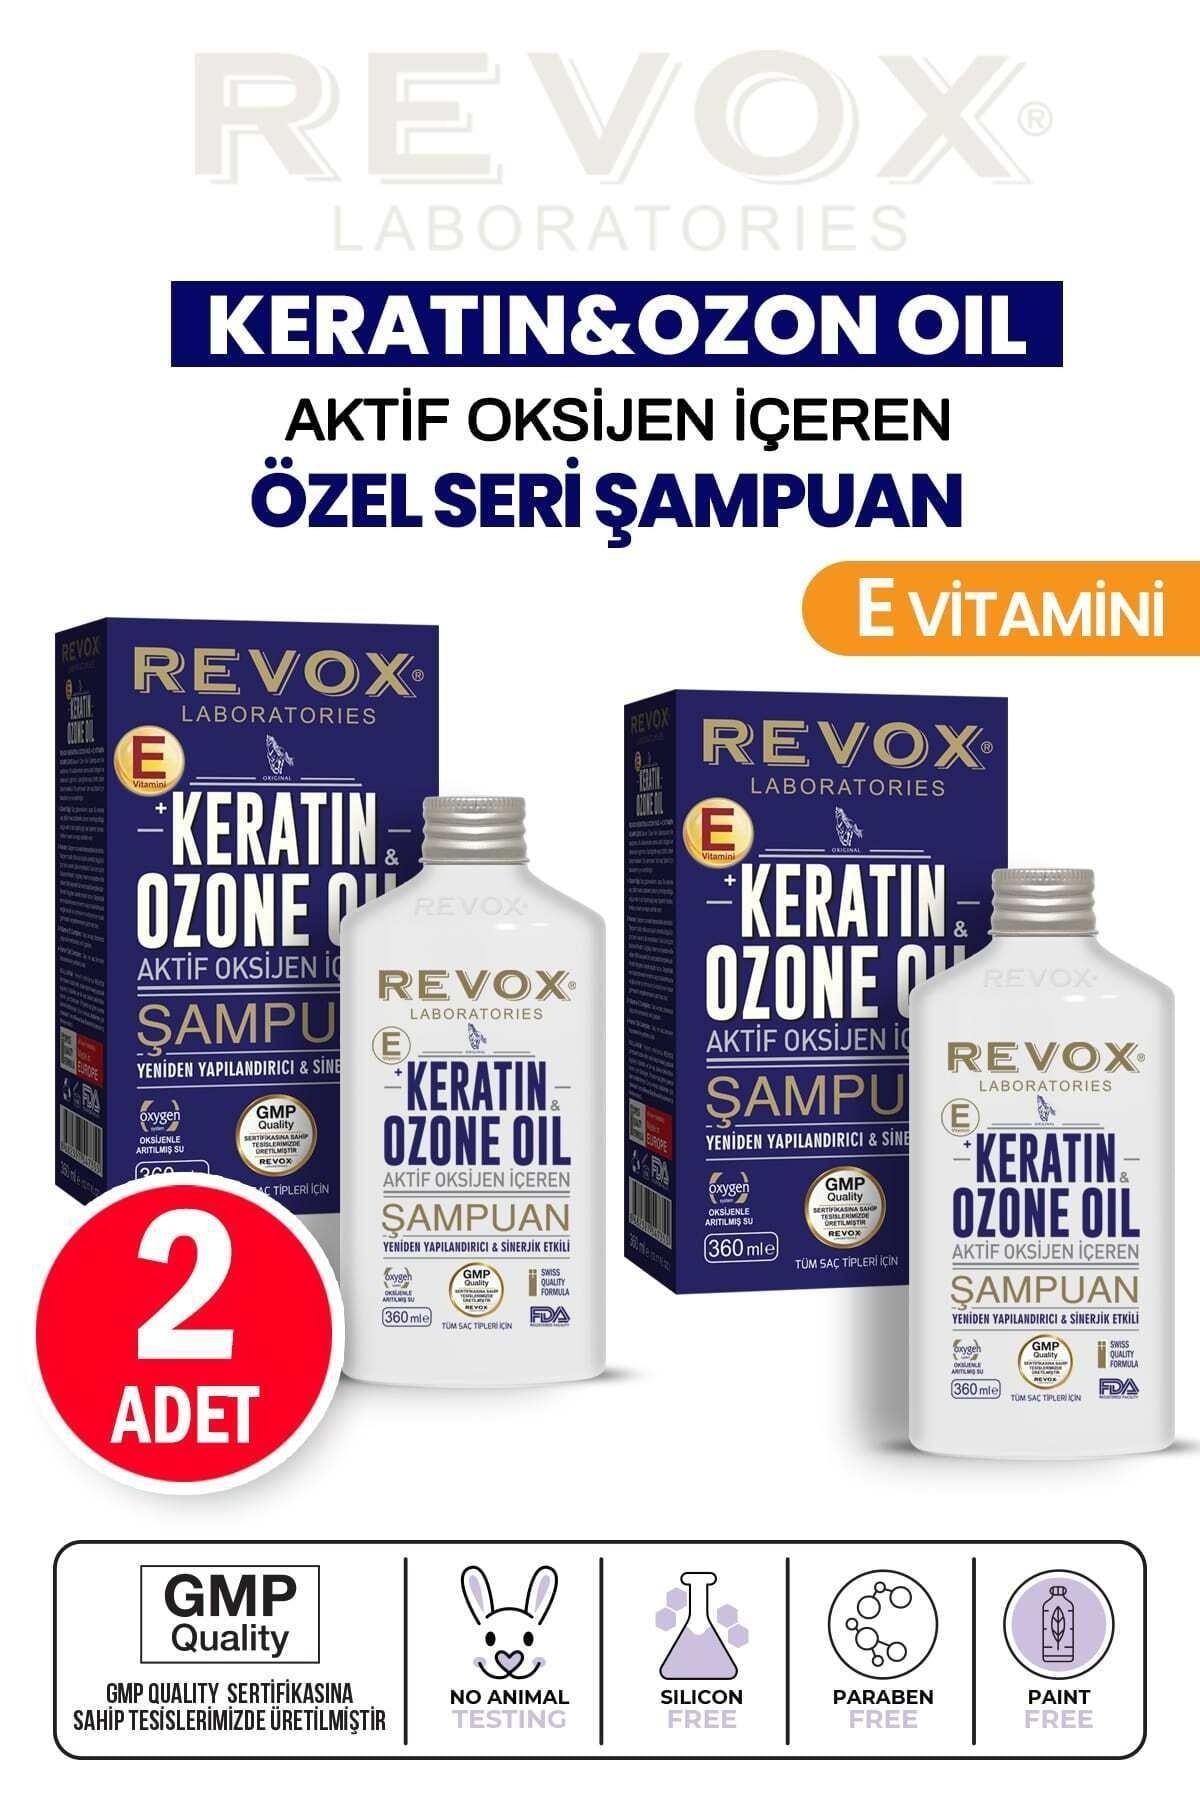 Revox Keratin & Ozon Oil Aktif Oksijen Içeren E Vitaminli Yeniden Yapılandırıcı Şampuan 2 Adet